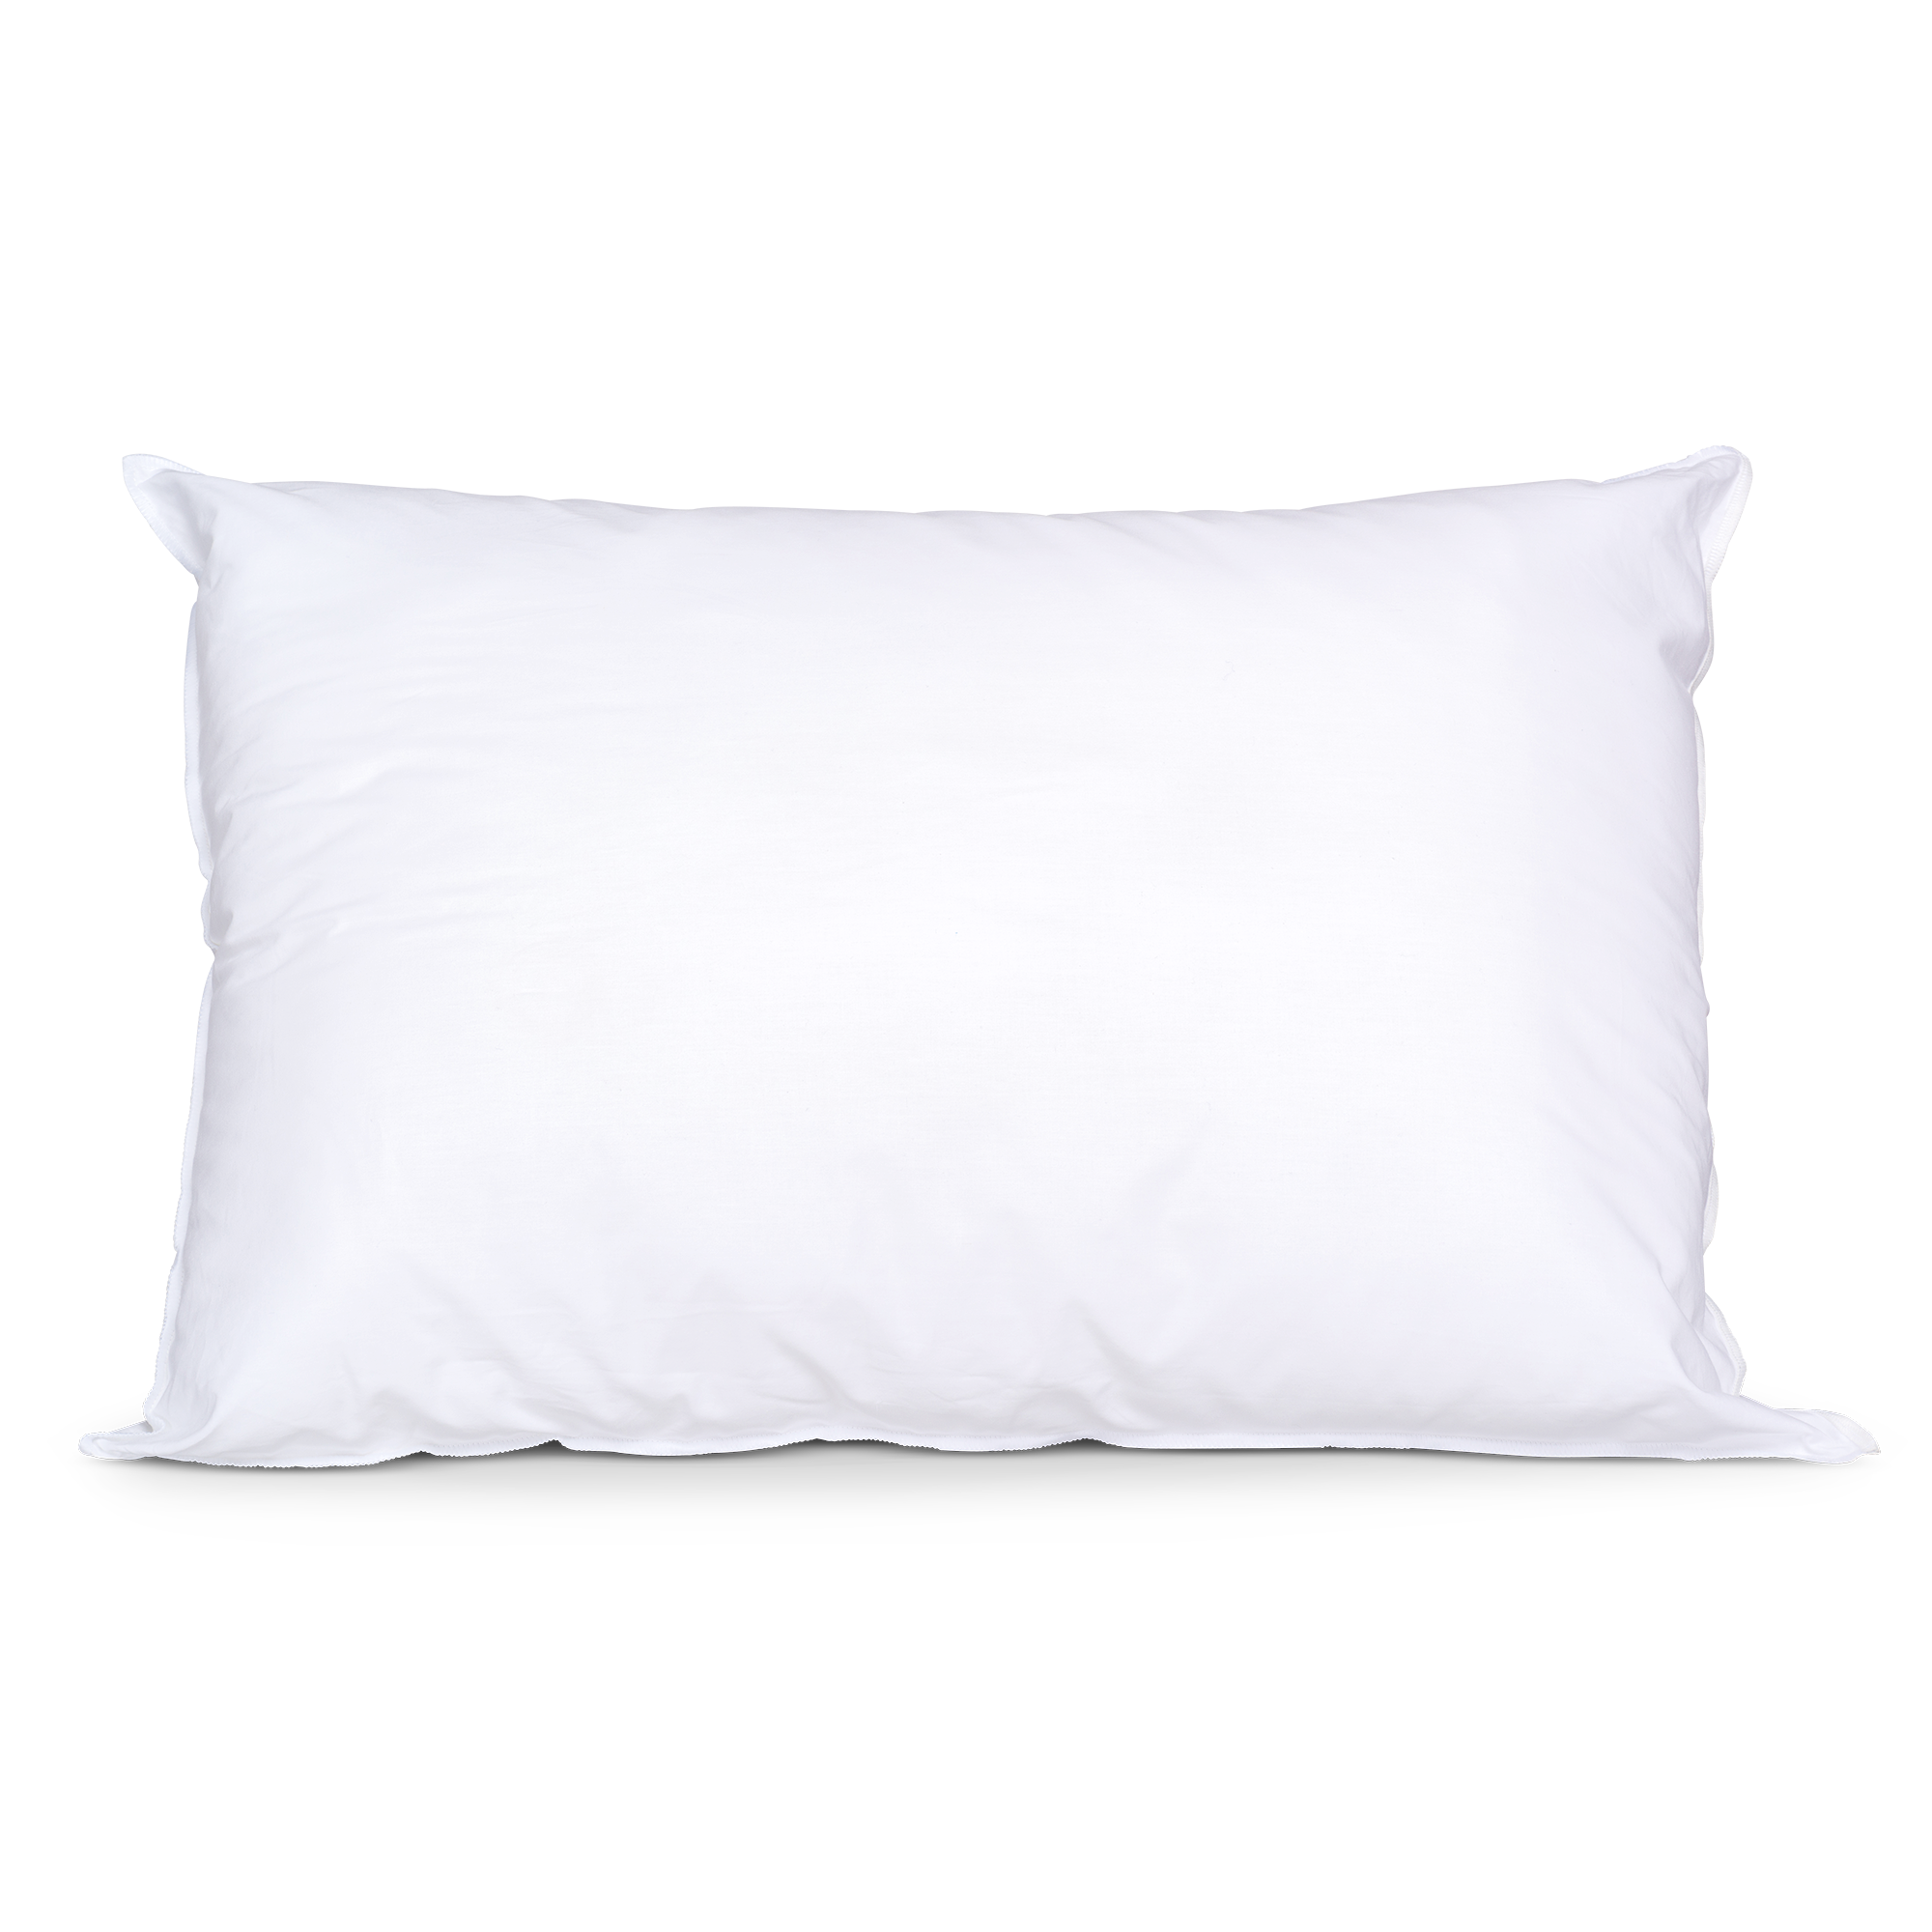 Chrioflow - Original Fibre Water Pillow